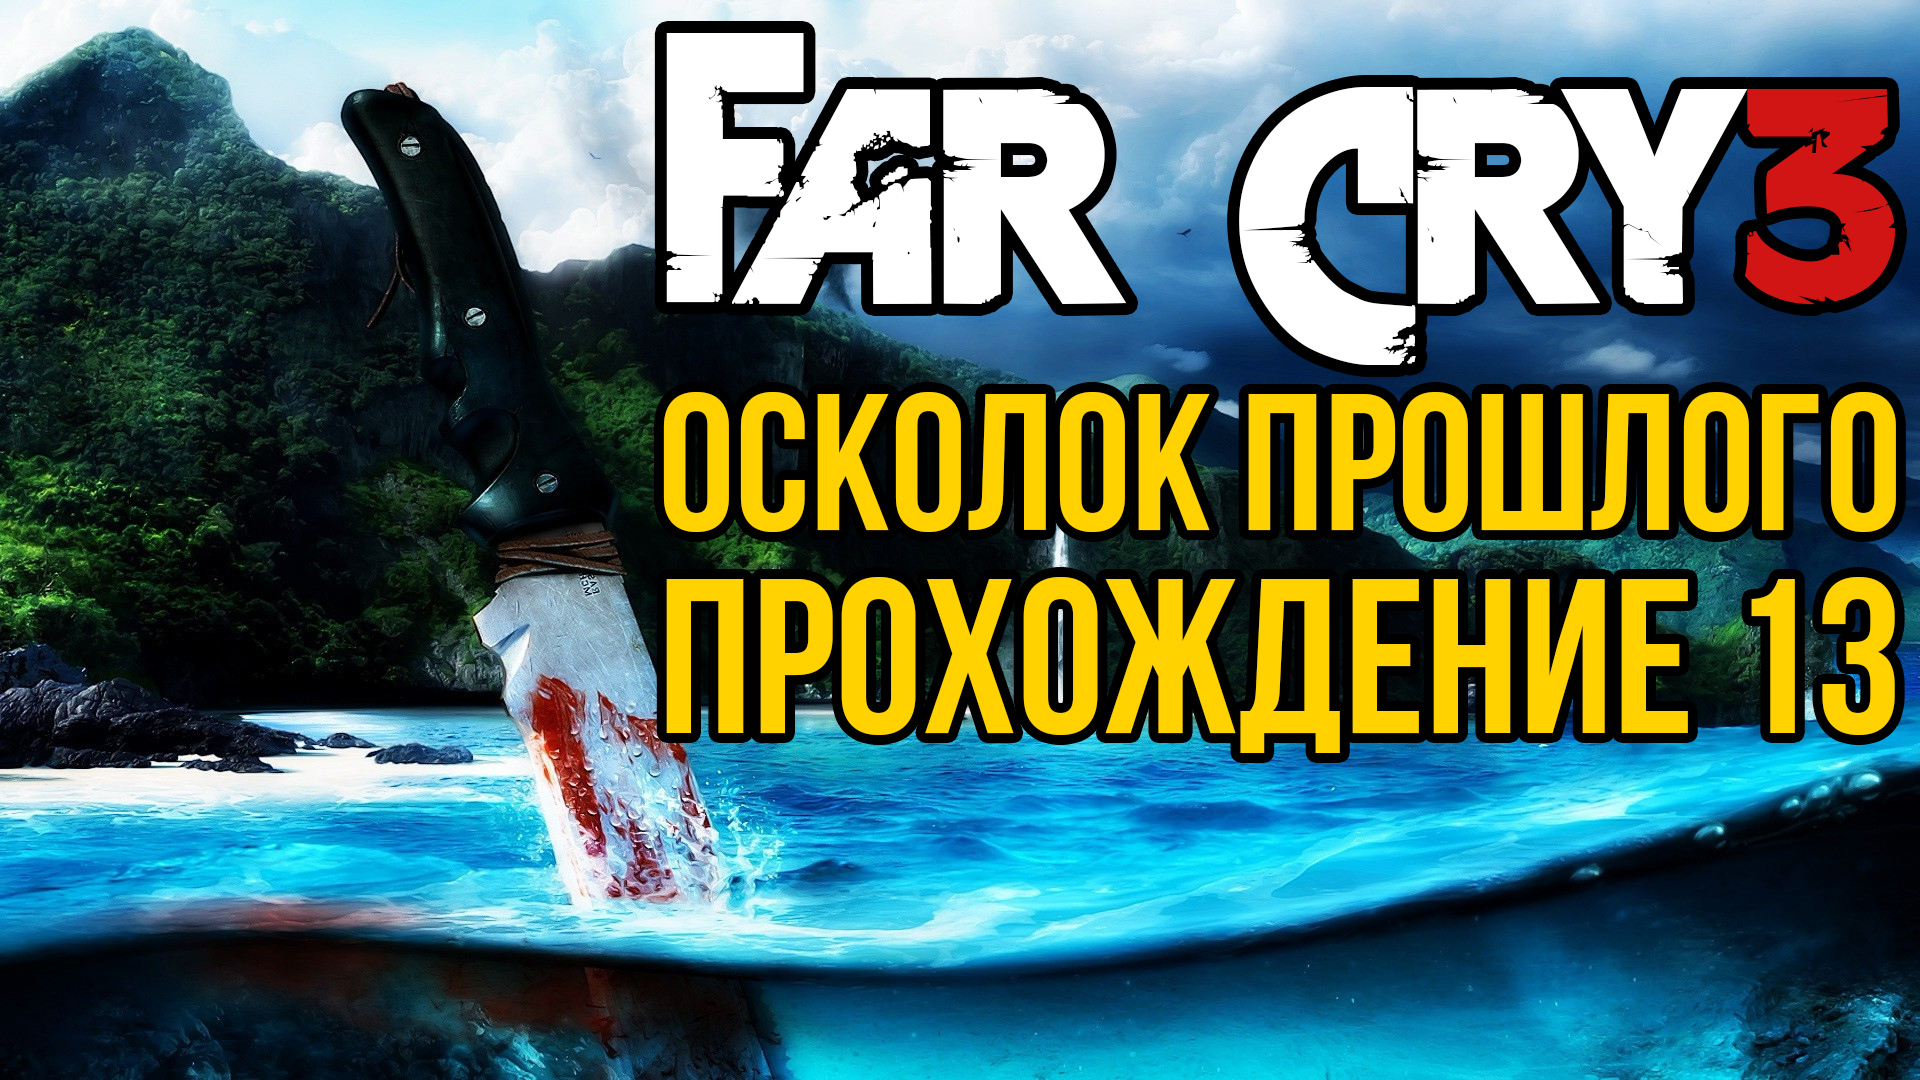 Far Cry 3. Осколок прошлого. Прохождение 13